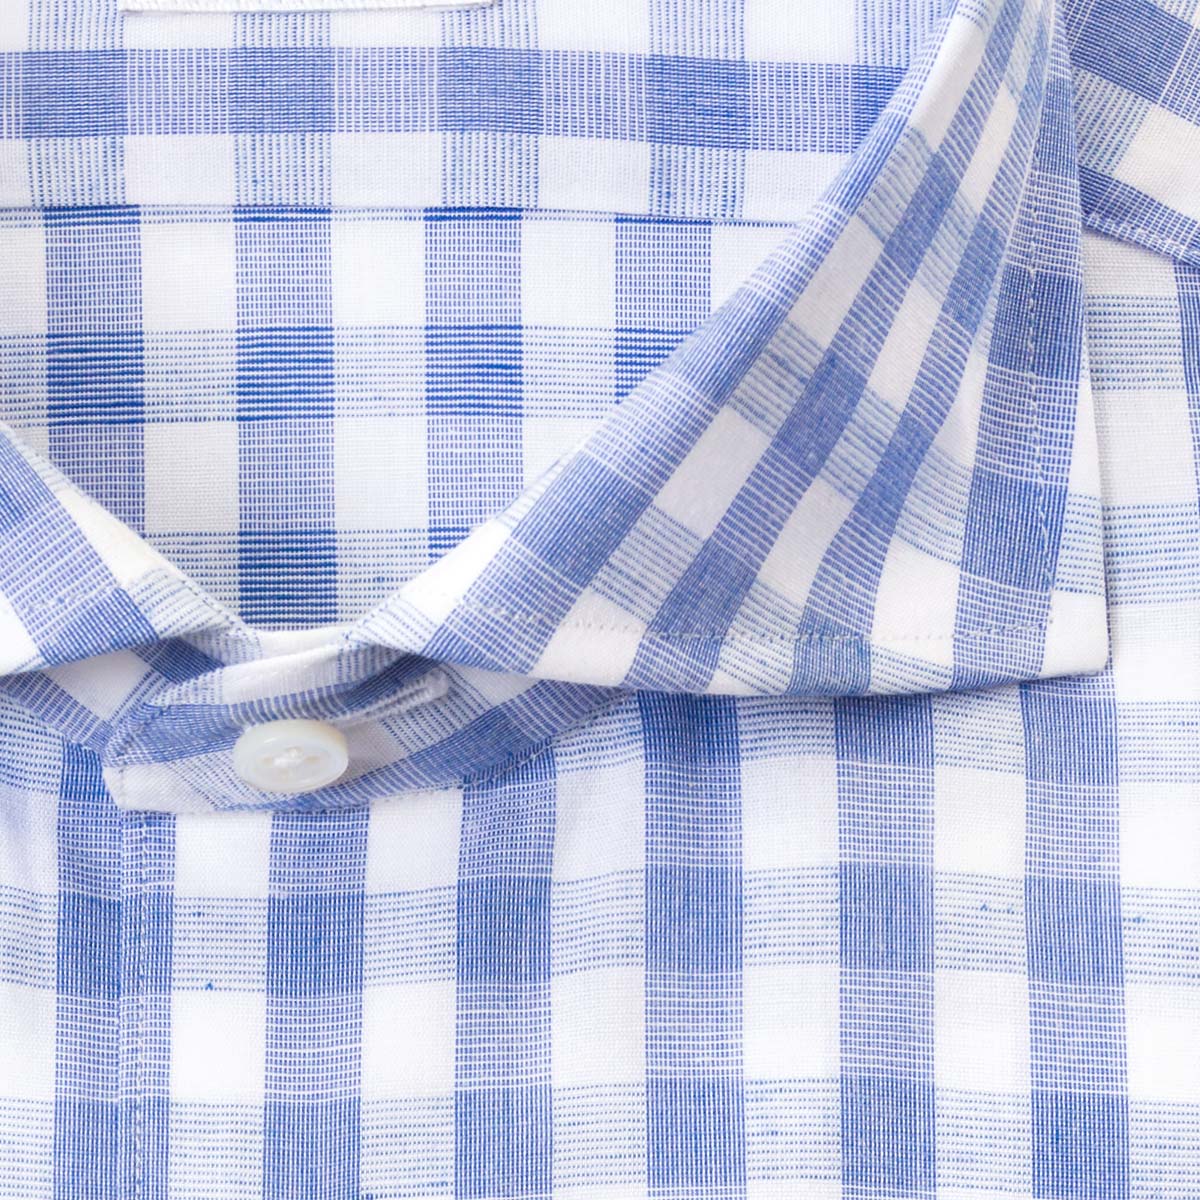 CHOYA Classic Style 長袖スリムフィット ワイドカラー ブルー ワイシャツ